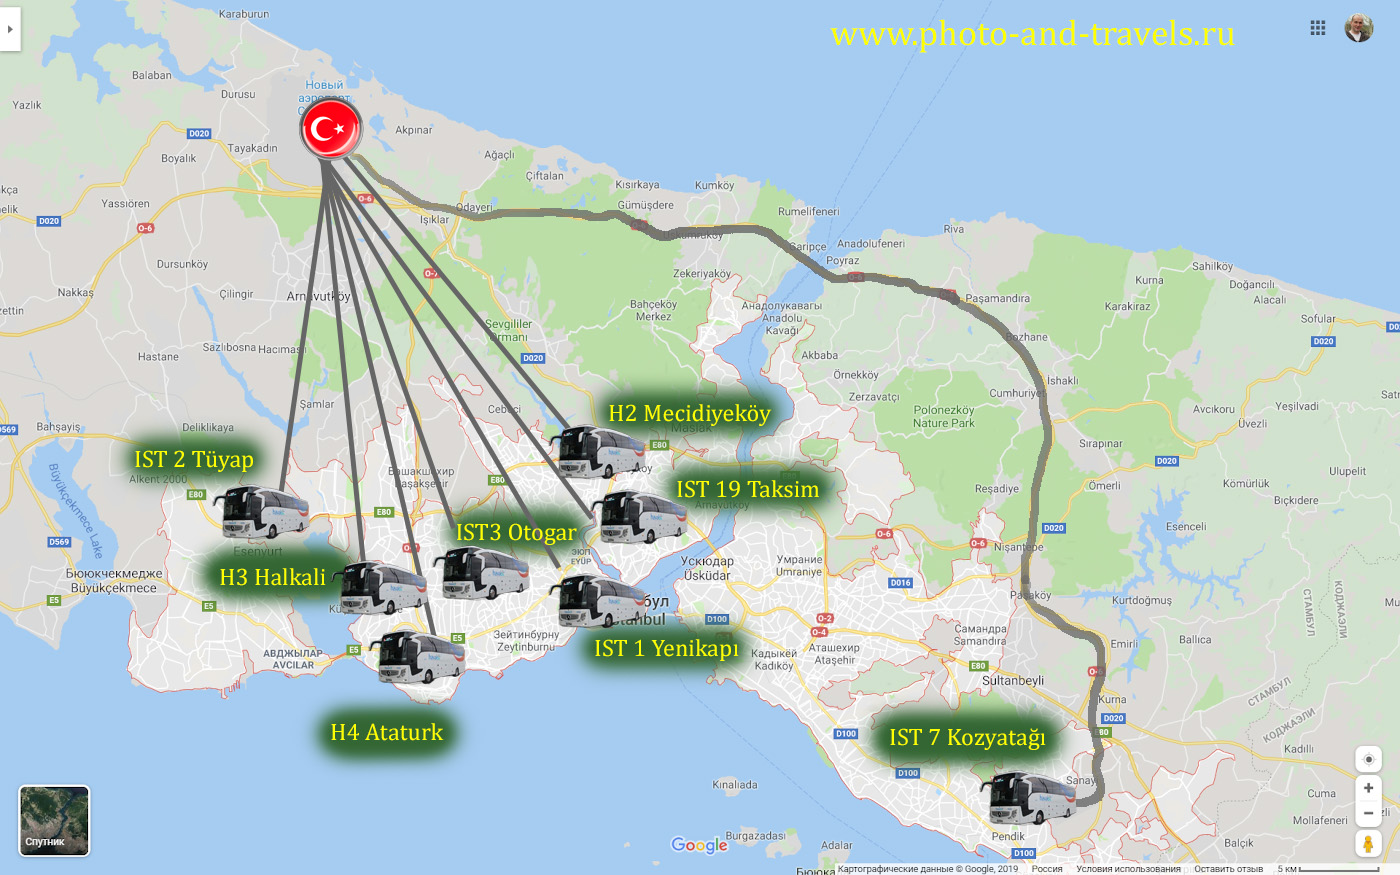 46. Схема маршрутов автобусов (шаттлов) «Havaist», поясняющая, как добраться в центр города на площади Таксим и Султанахмет.